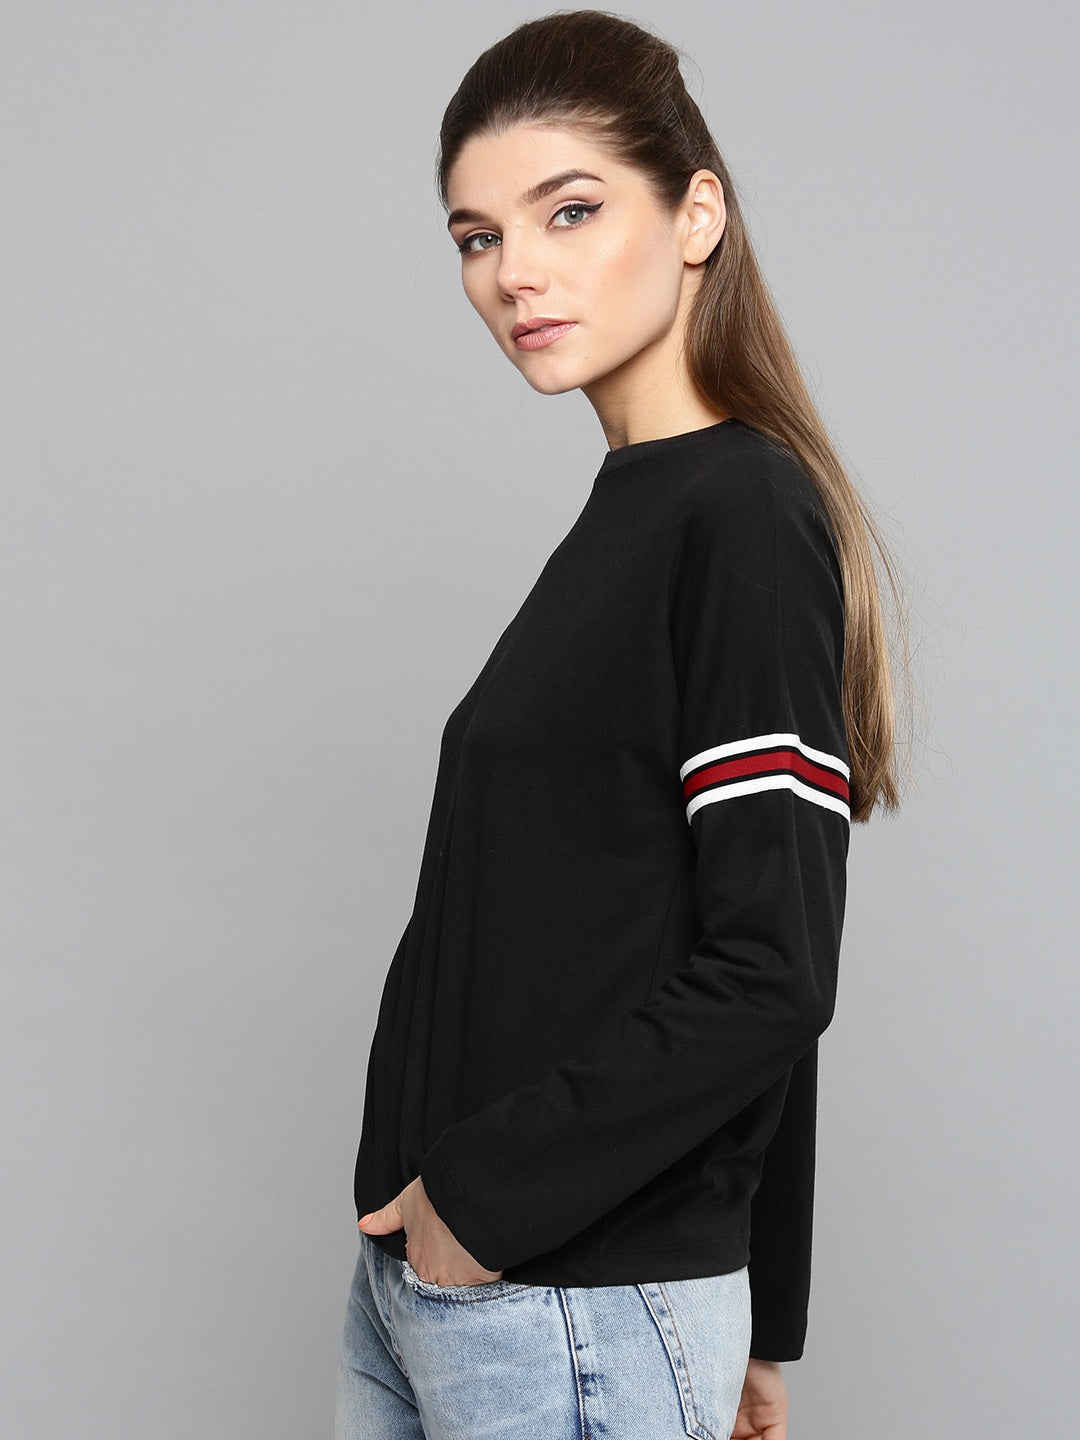 Ace Printed Stripe Sleeves Womens Sweatshirt 